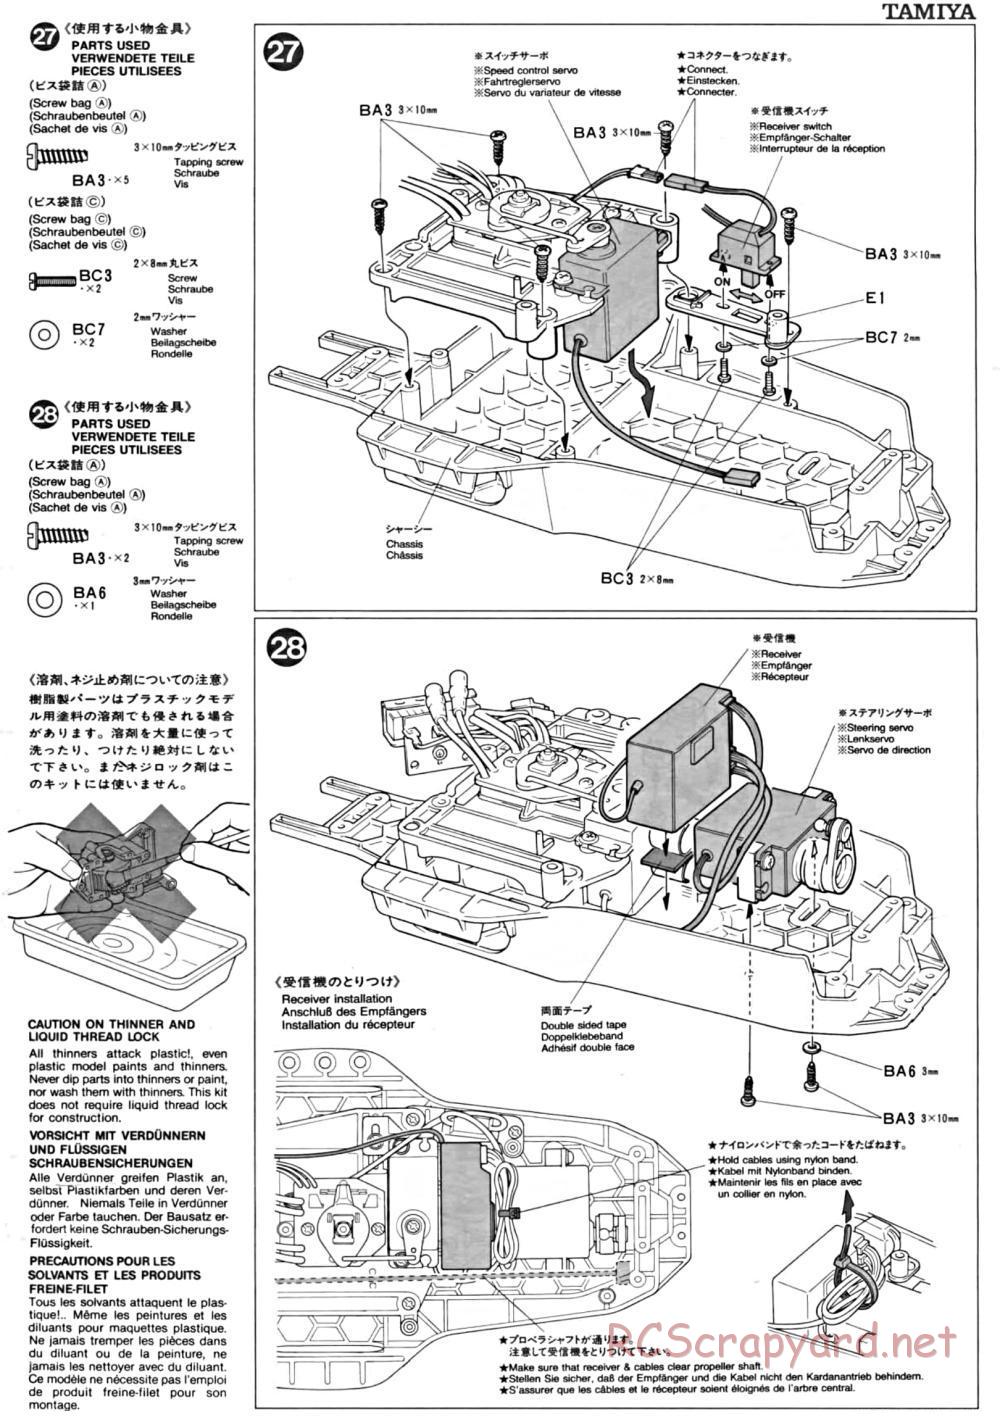 Tamiya - TA-01 Chassis - Manual - Page 10